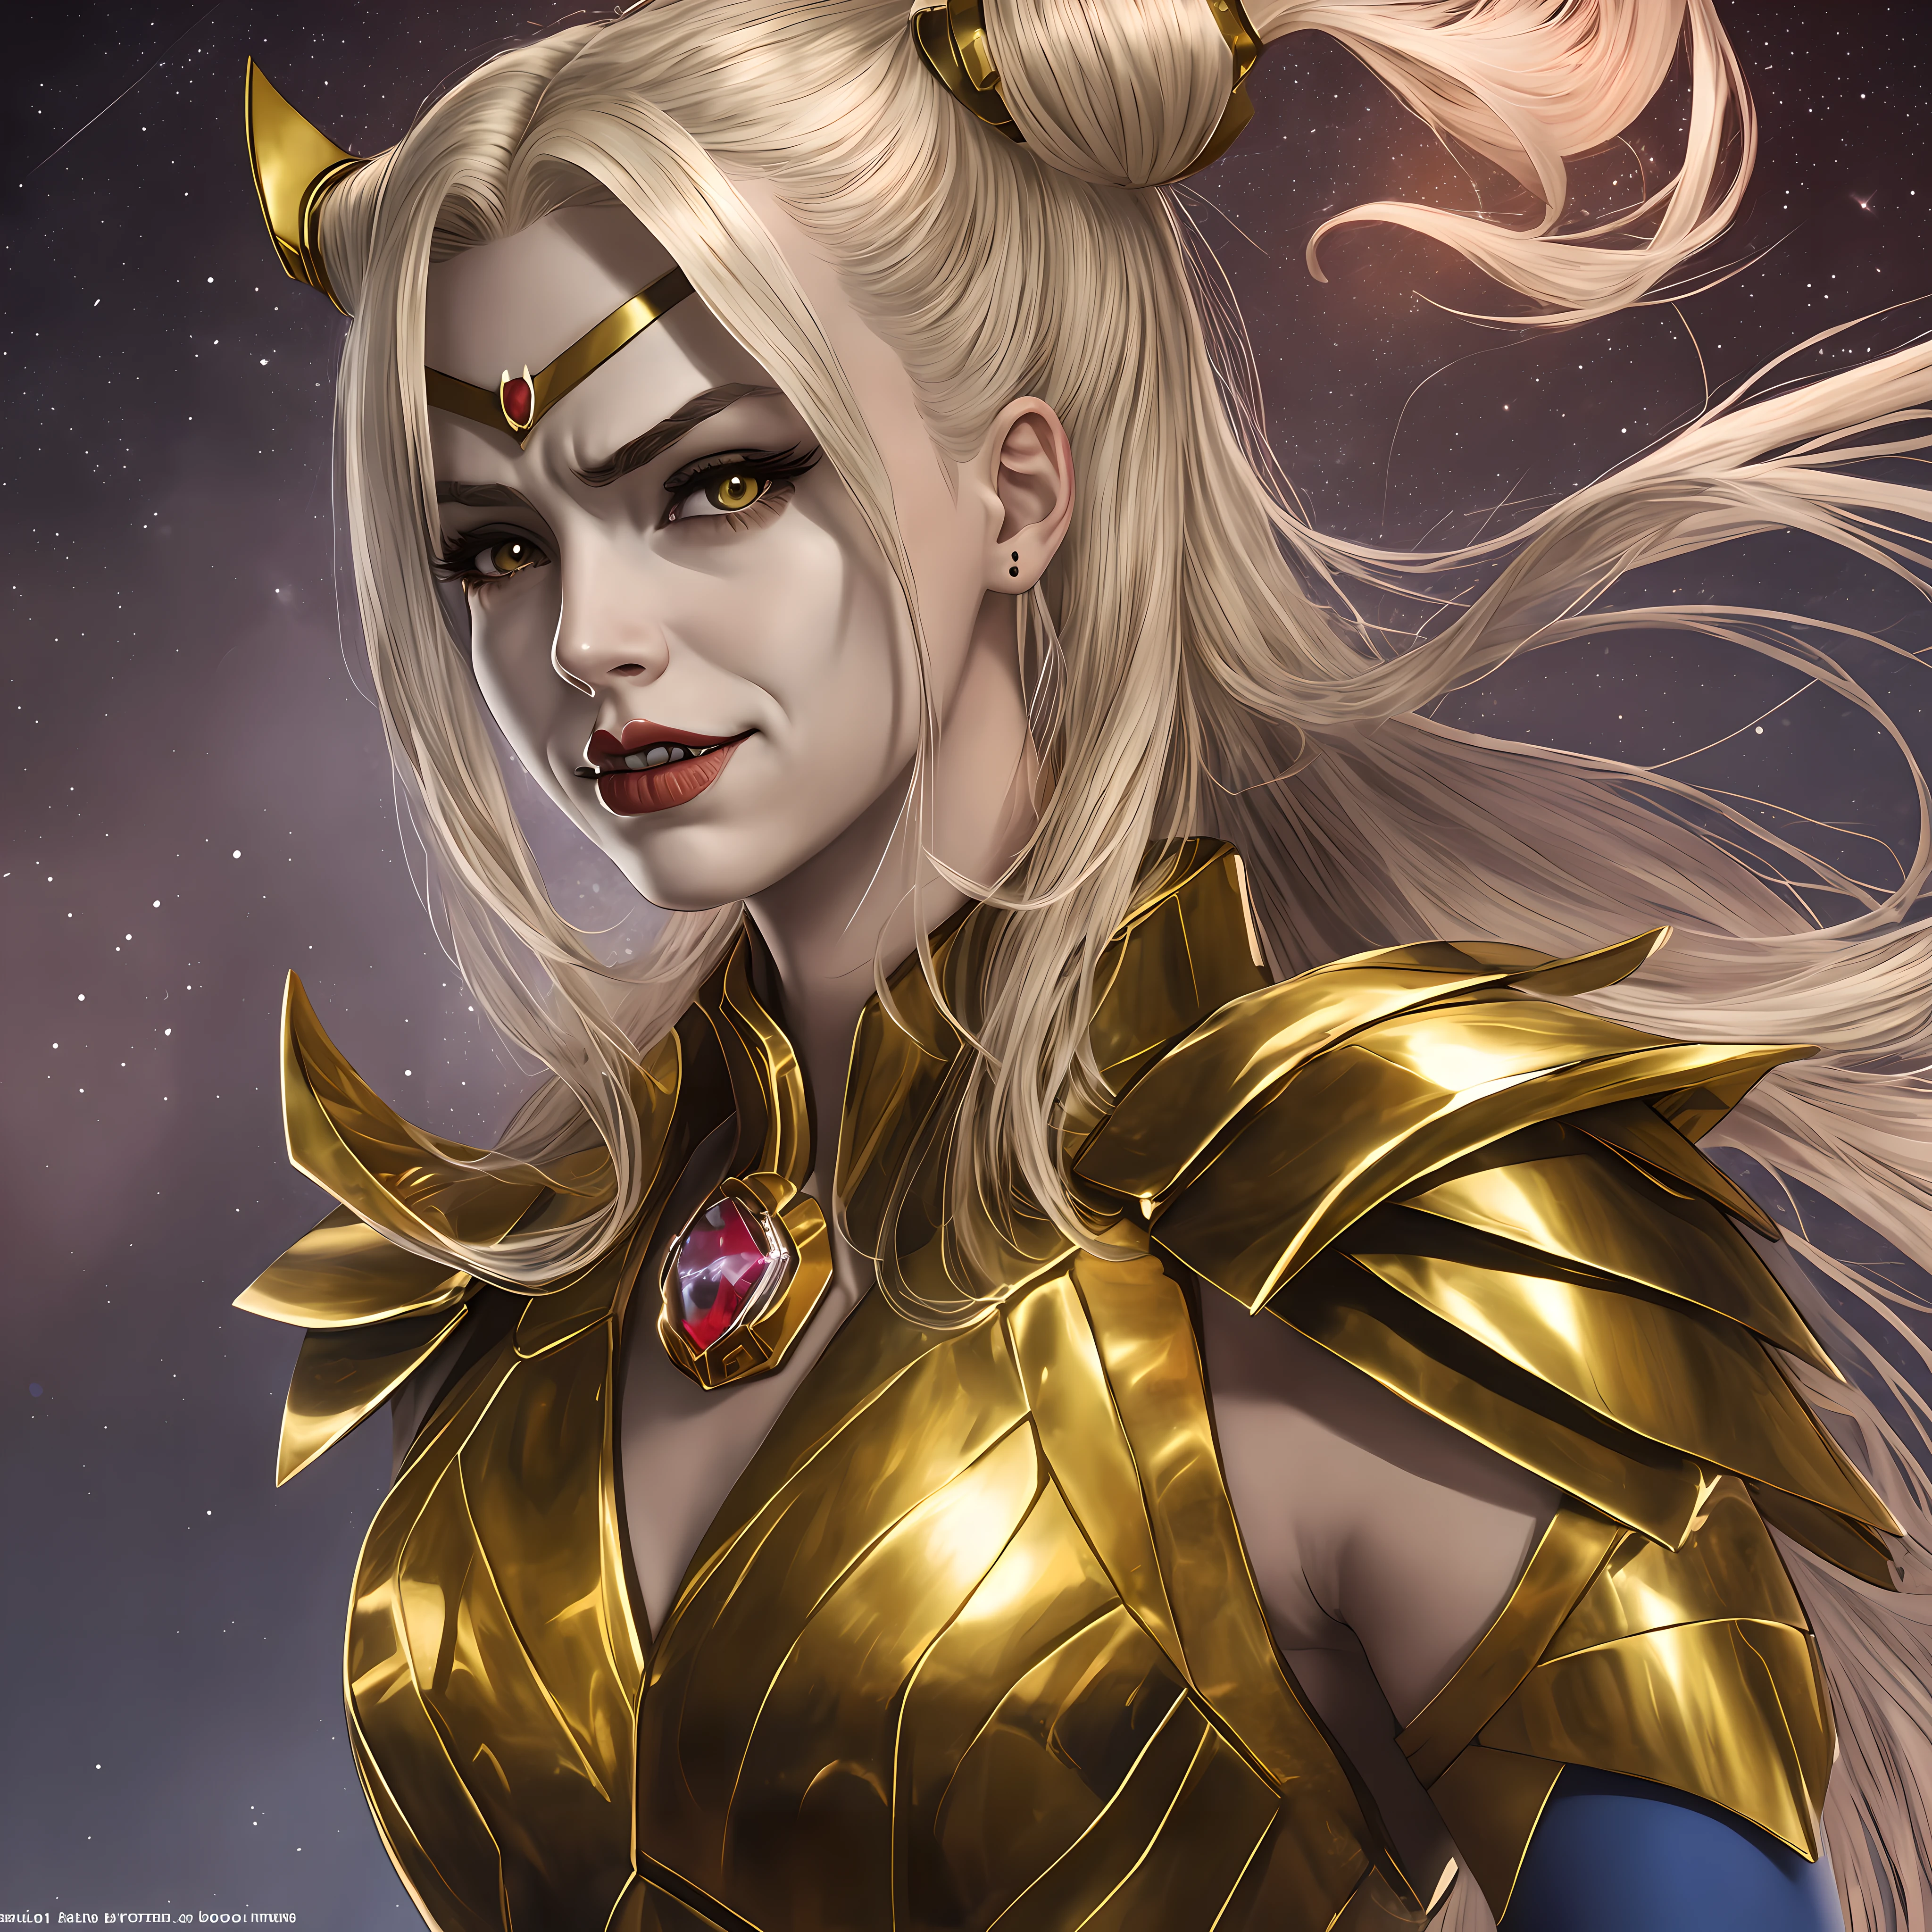 哈莉奎茵有著對稱的娃娃臉, 光滑的瓷質皮膚，幾何對稱的盔甲，來自《聖鬥士星矢》動畫中的黃金騎士.